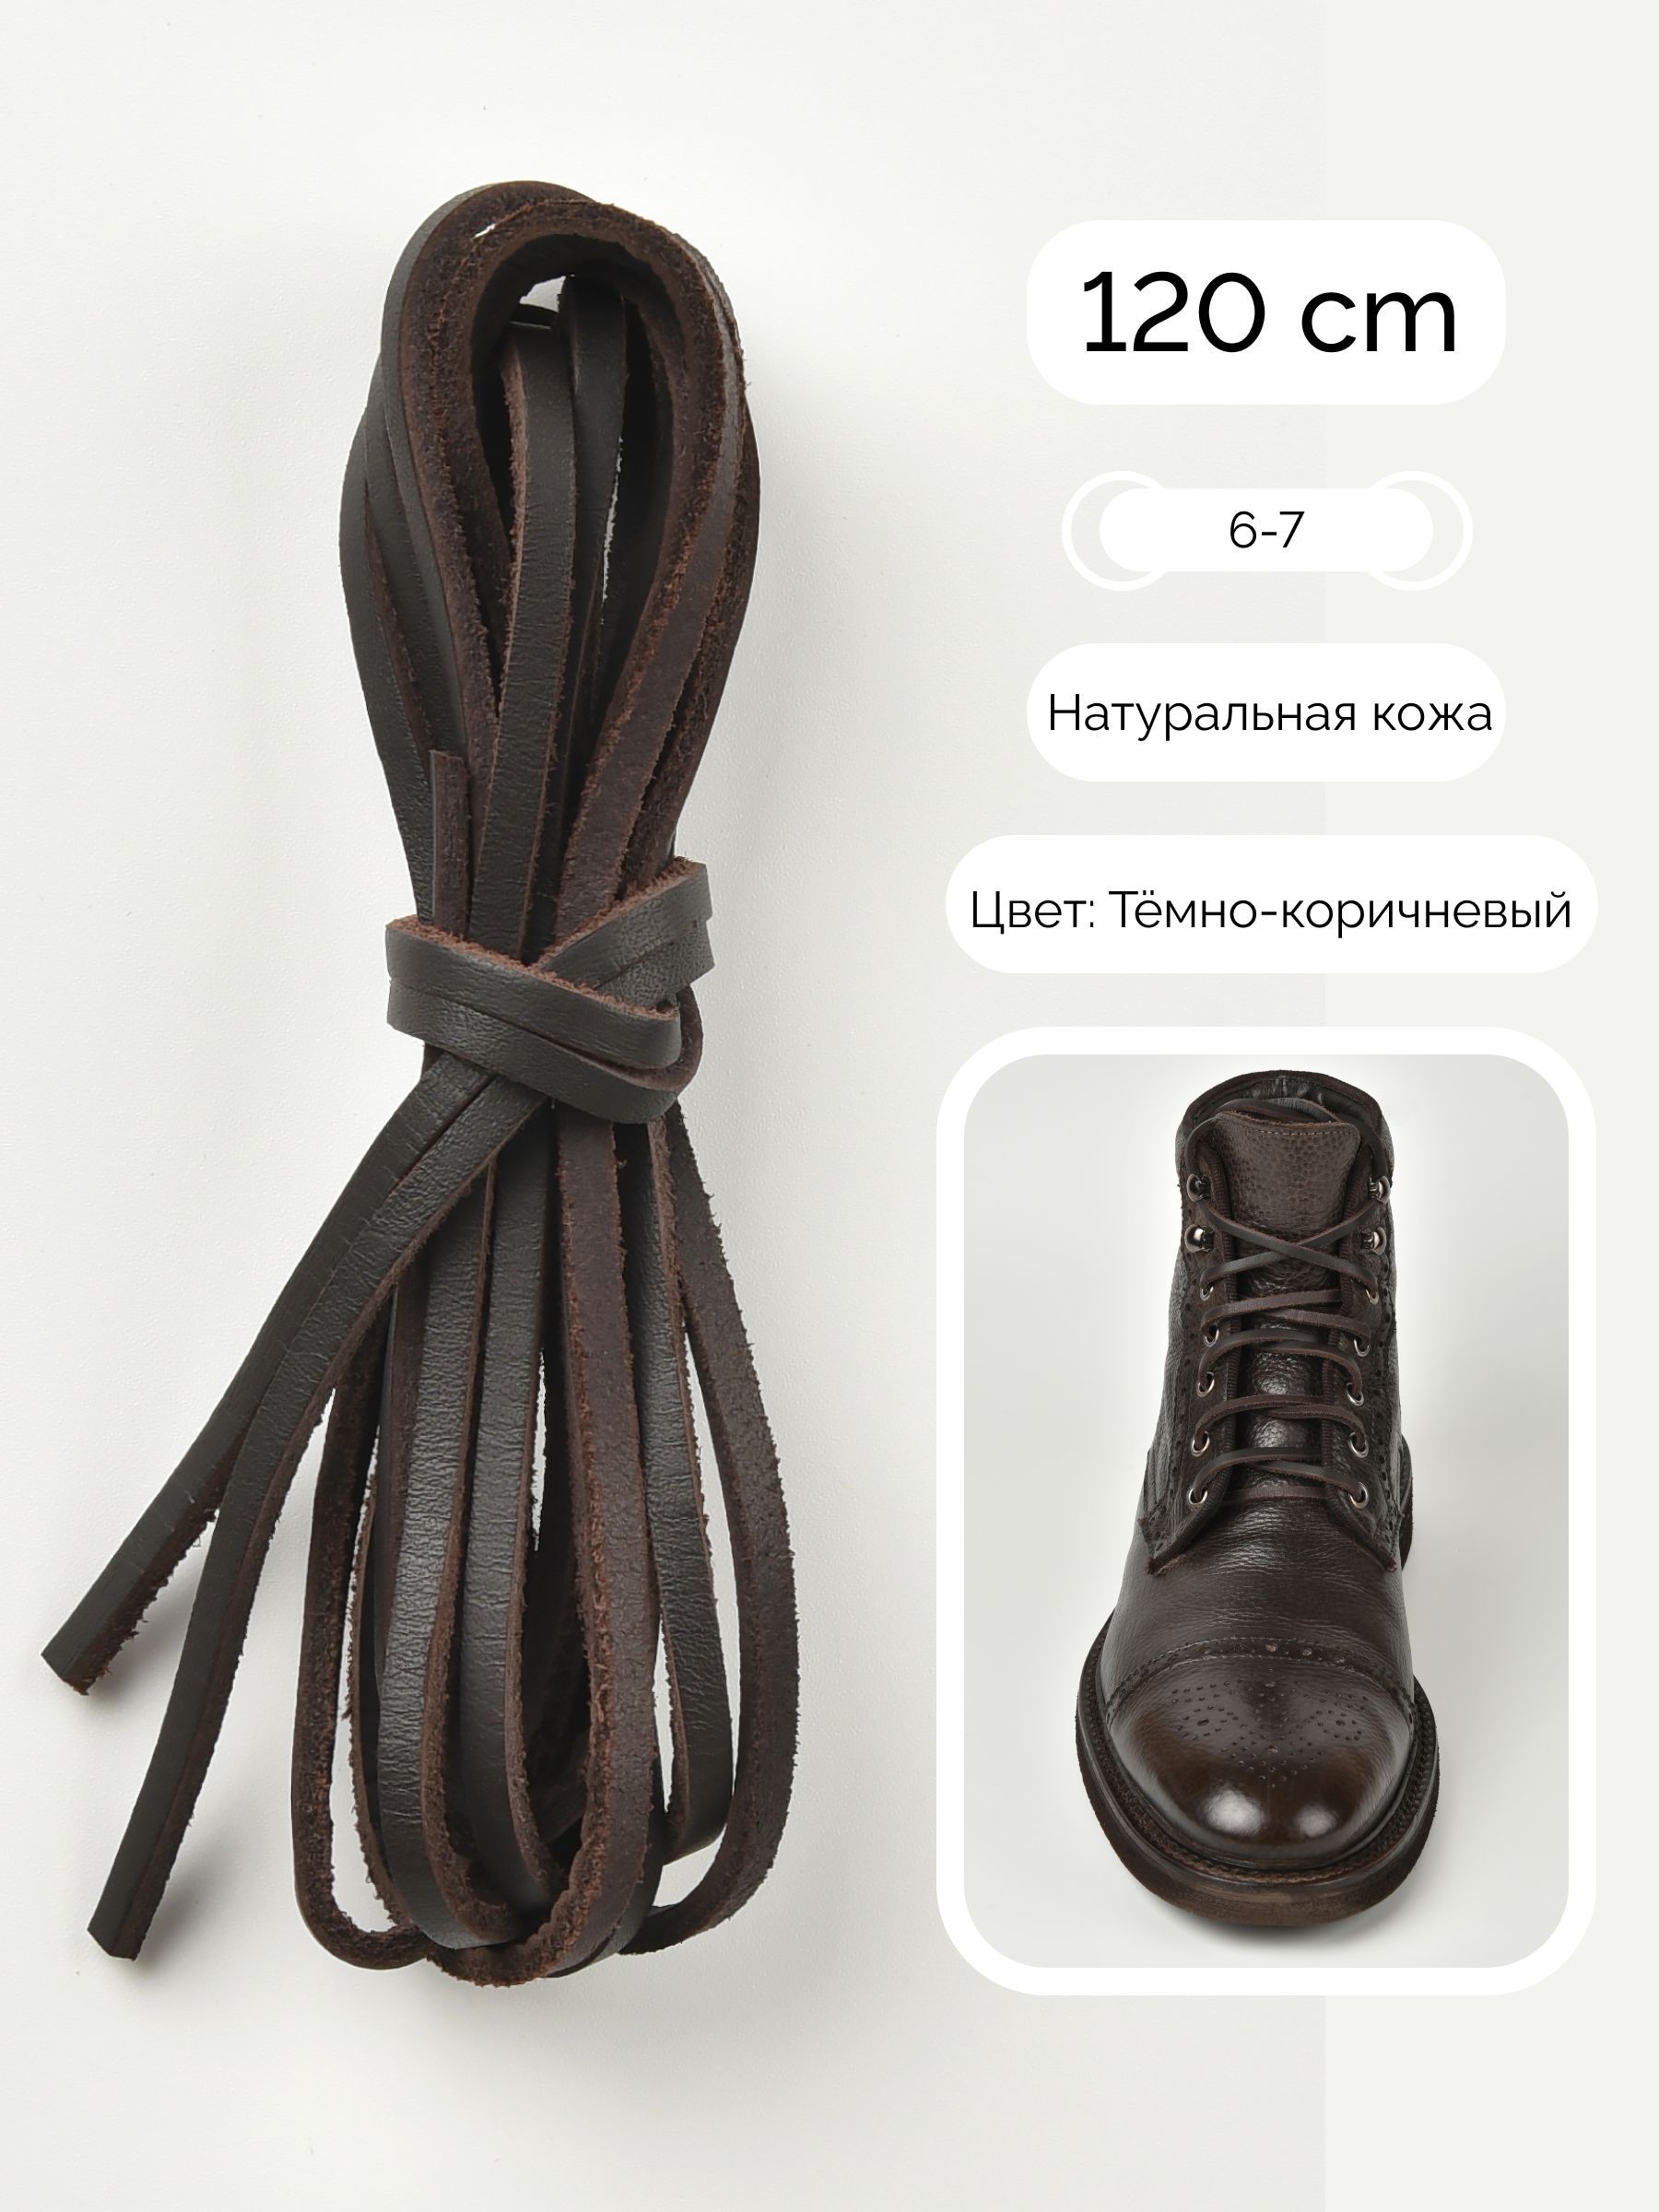 Кожаная шнуровка купить. Шнурки черные плоские для берцев 240 см. Вощеные шнурки обувные плоские 220 см. Гайтан из шнурка для обуви. Шнурки для обуви Bergal 8716696 кожаные.